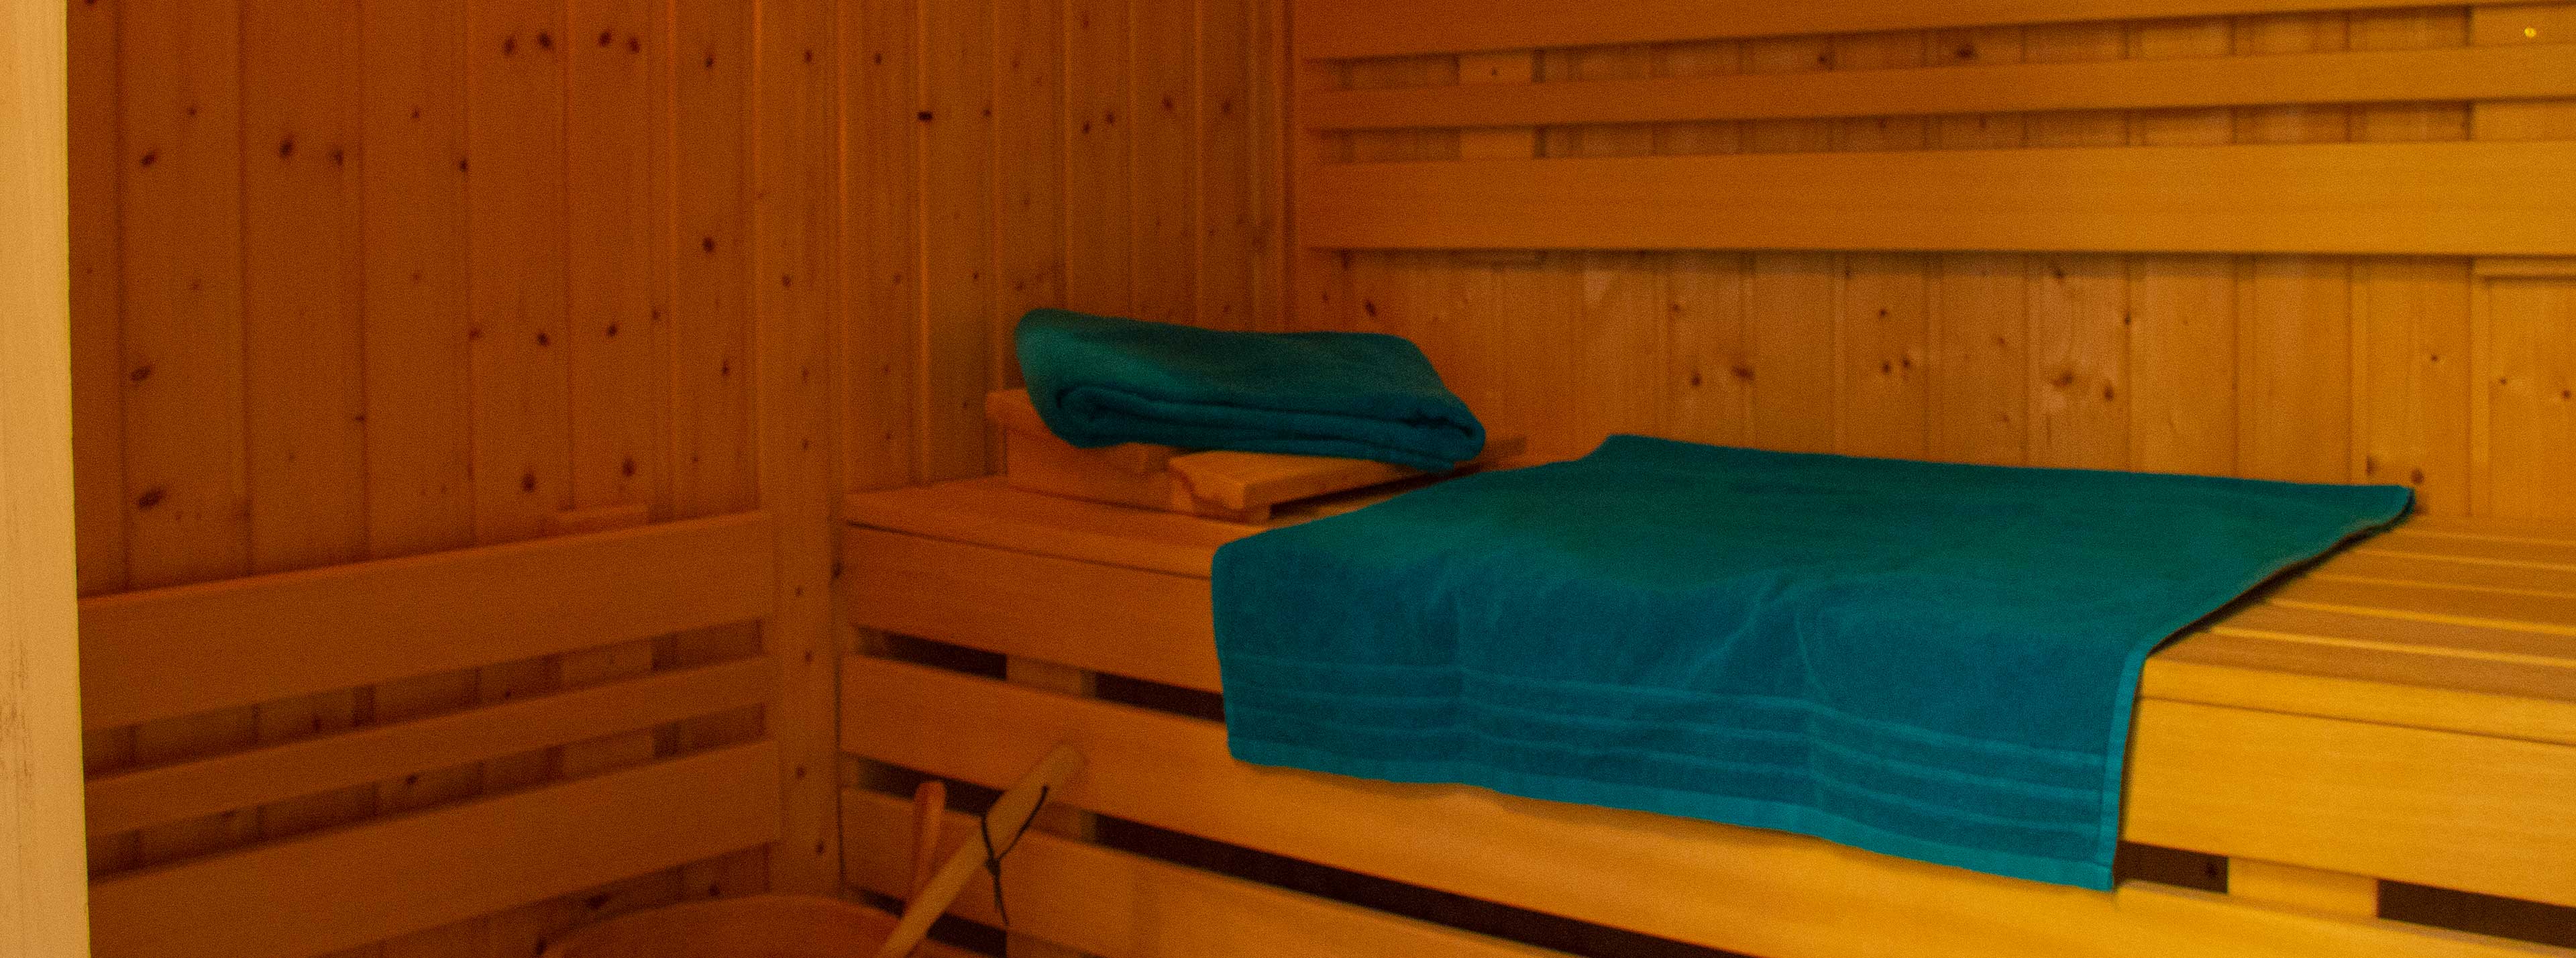 Sauna im Ferienhaus Jule in Nienhagen